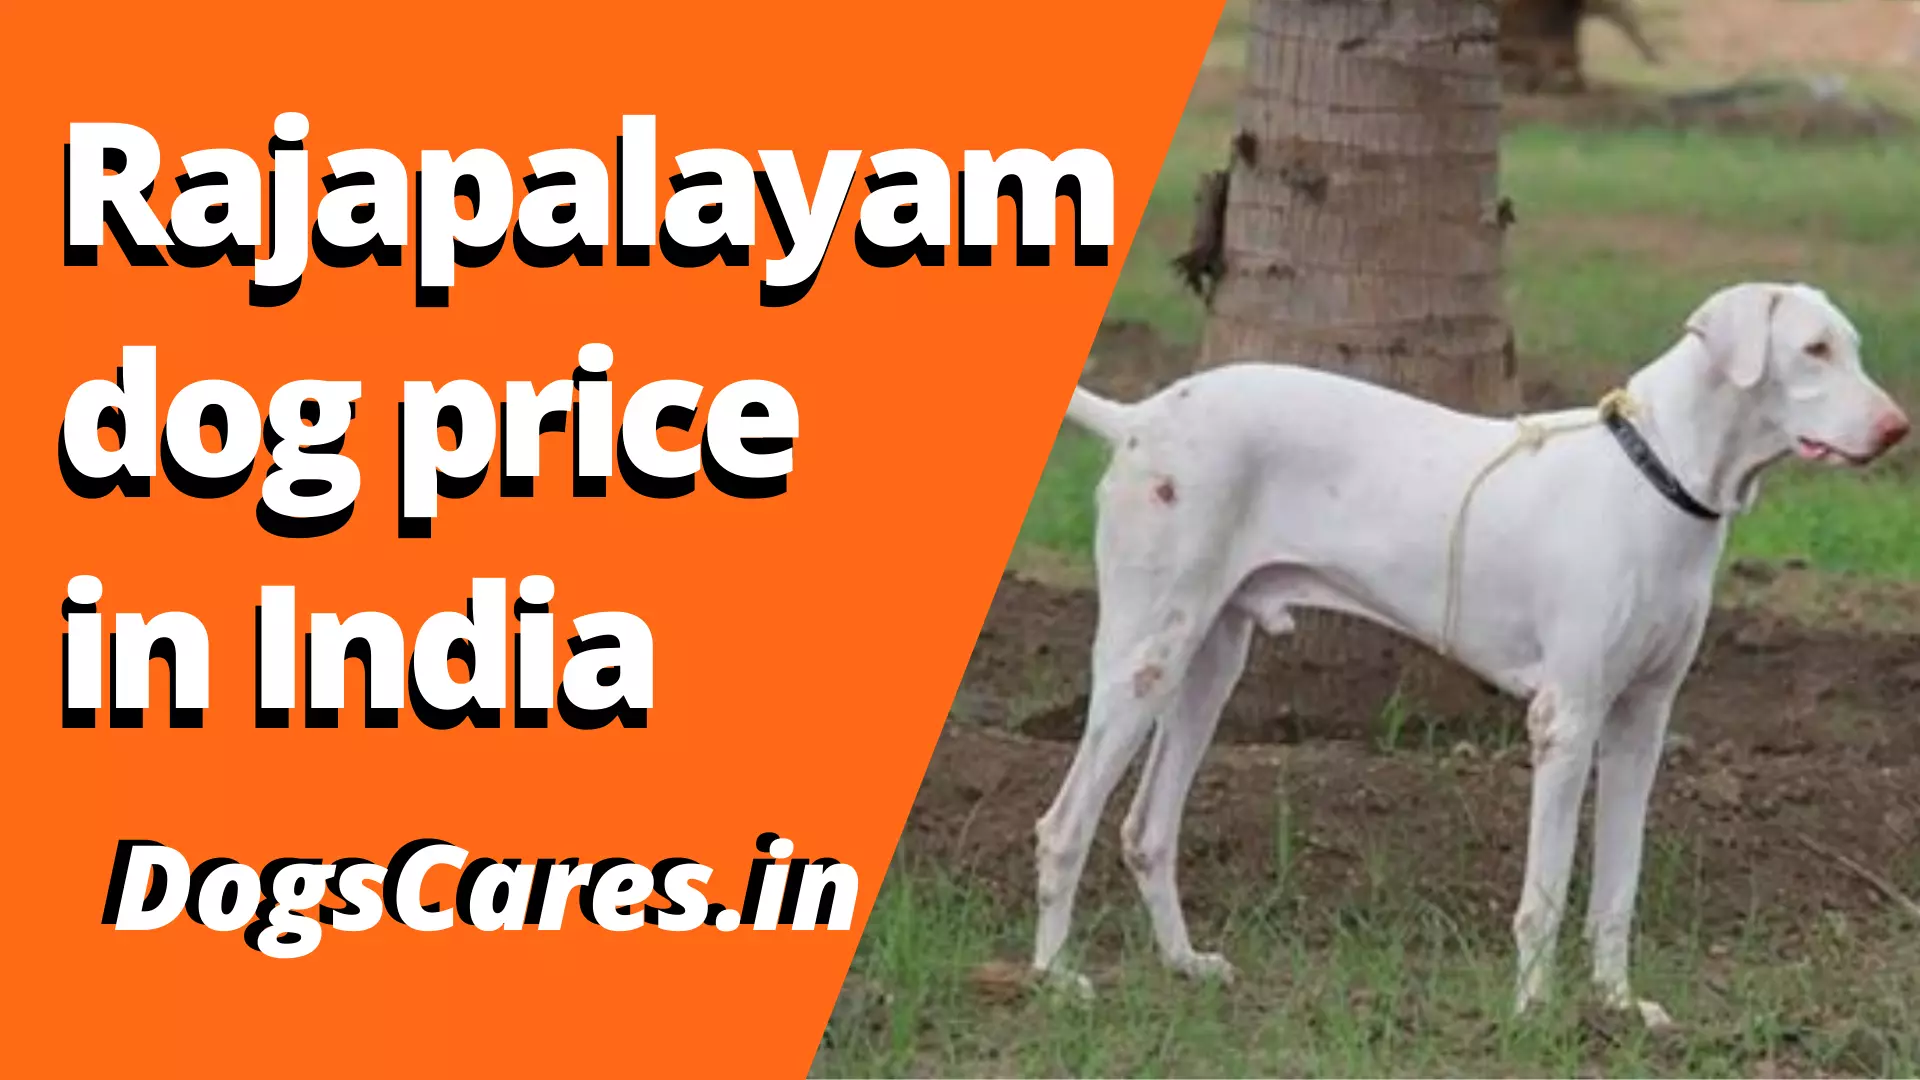 Rajapalayam dog price